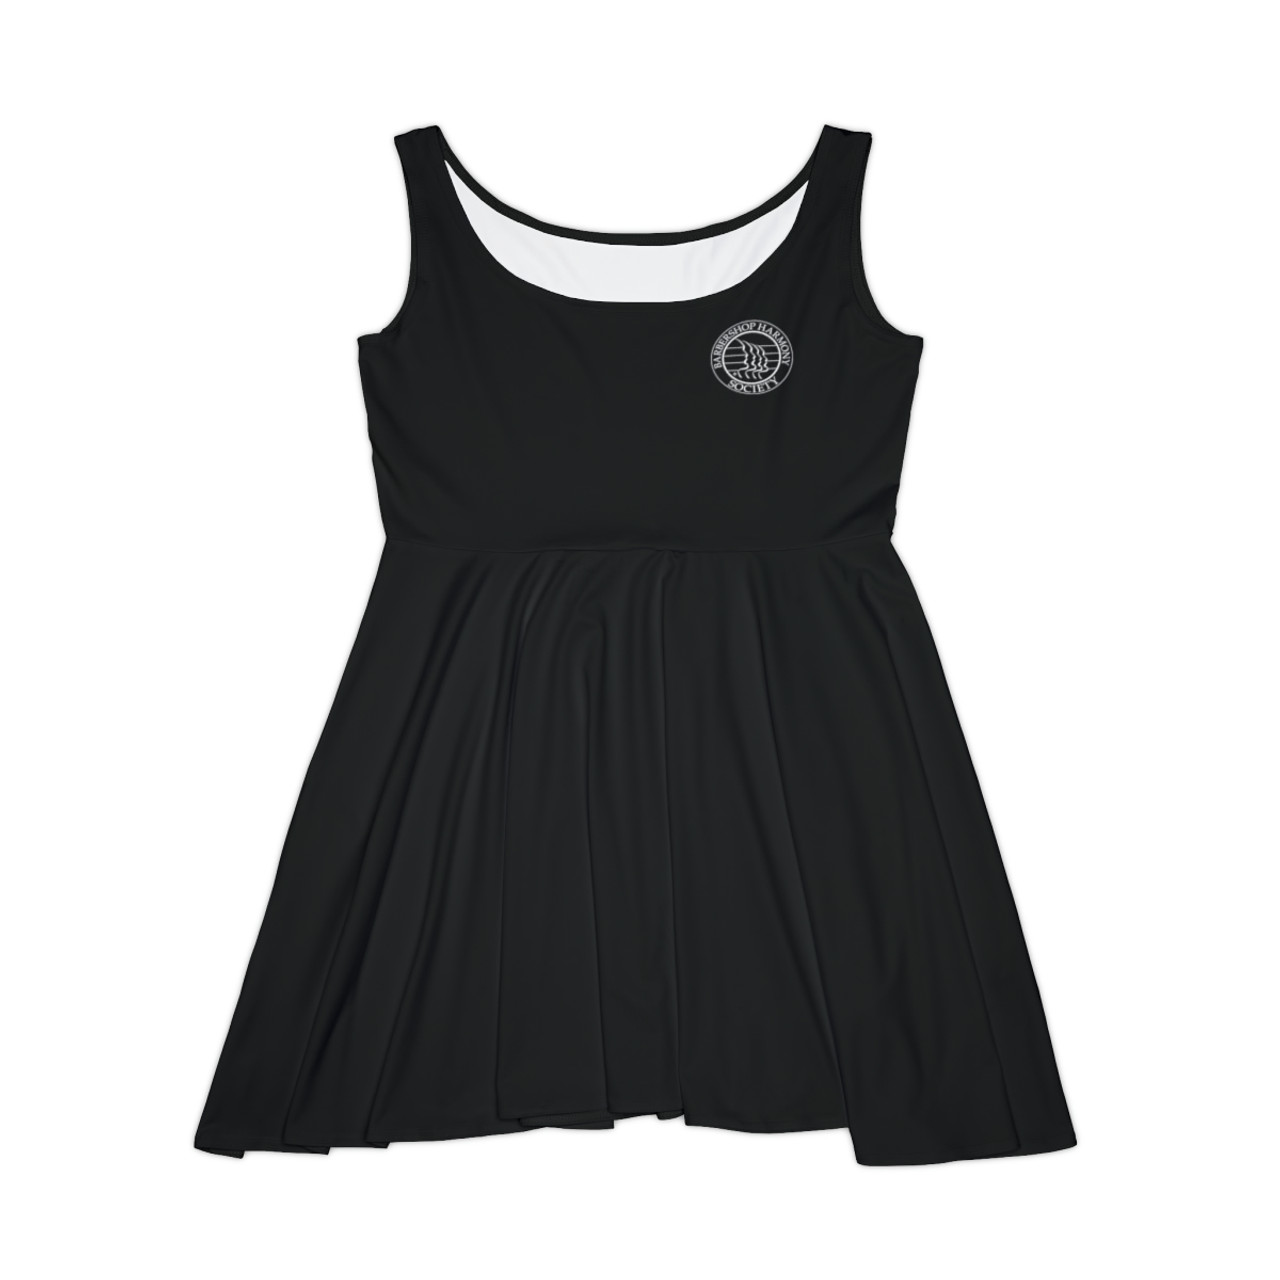 Women's Black Skater Dress- Left Side BHS Seal